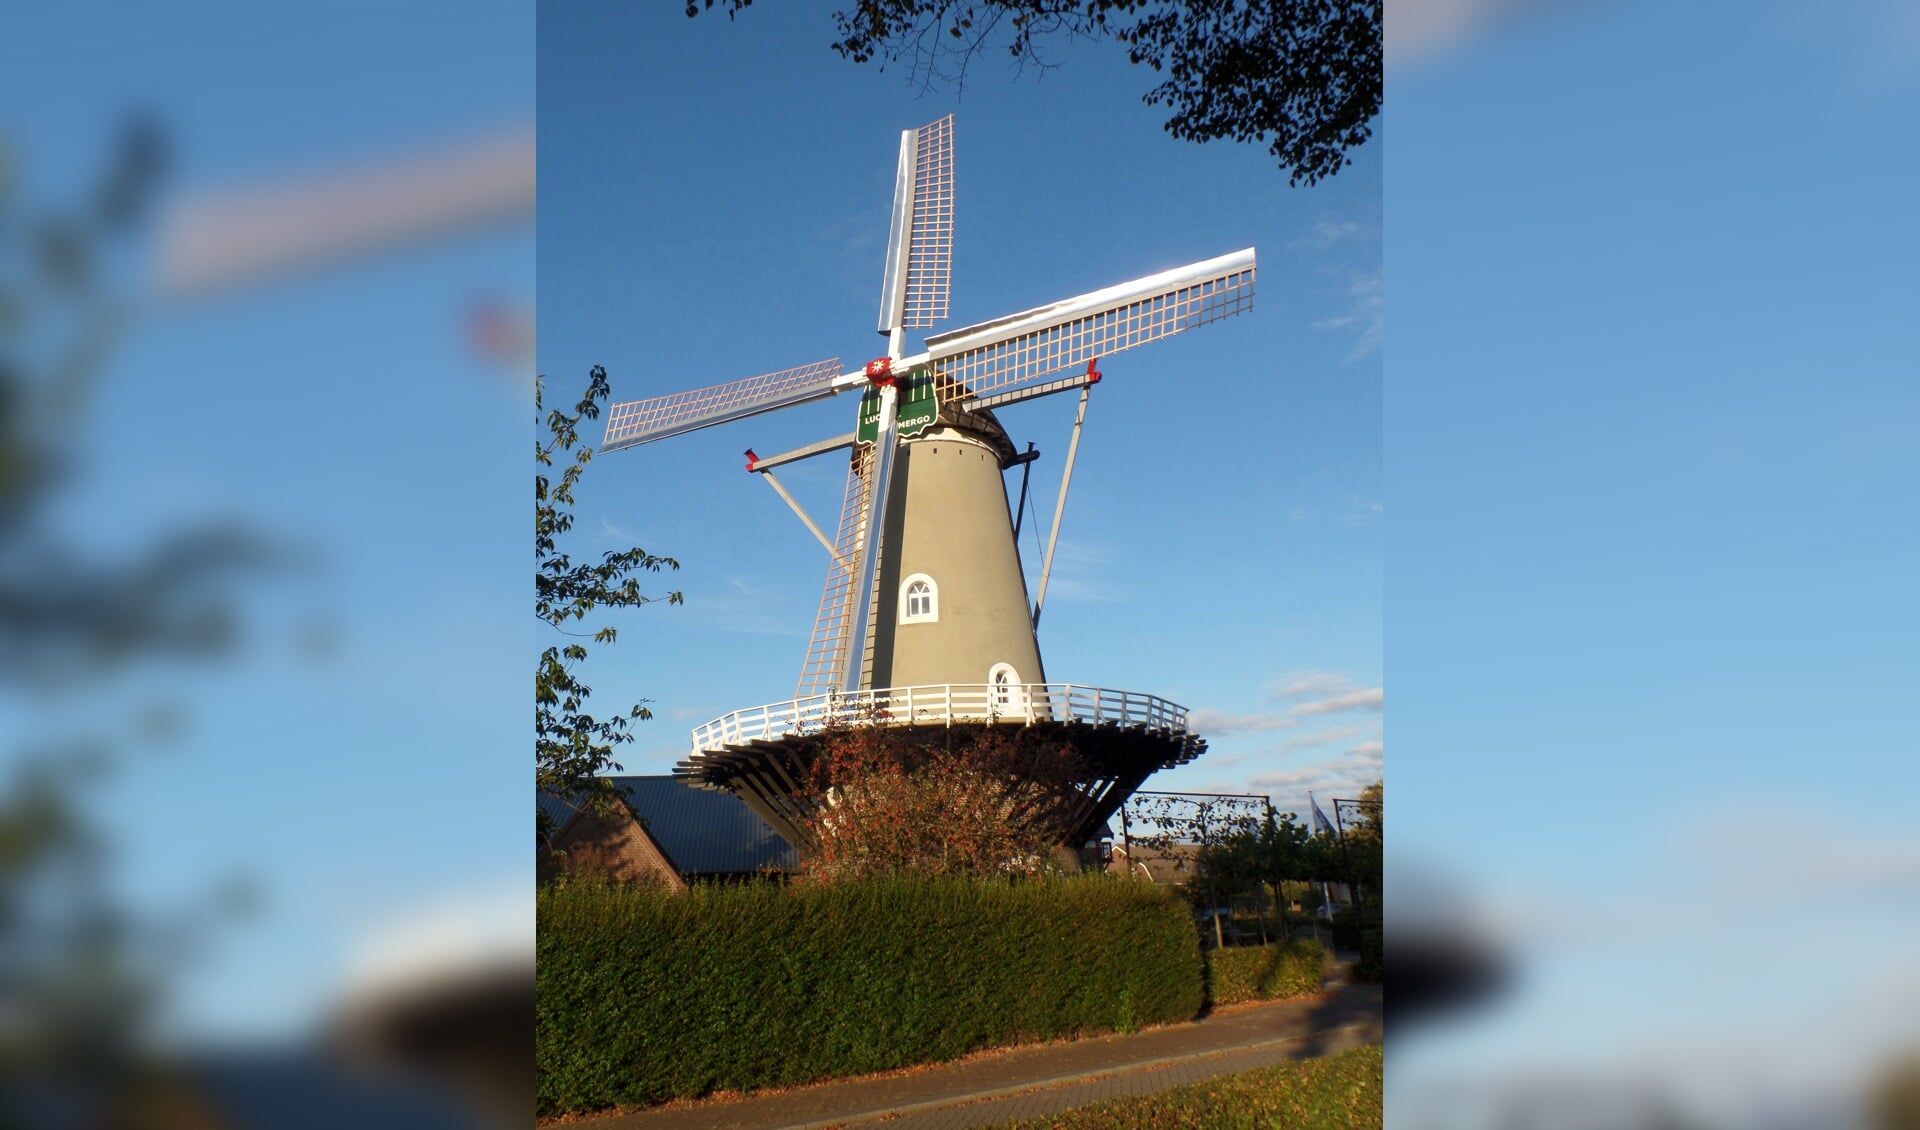 De molen in Rijkevoort wordt zondag feestelijk heropend.